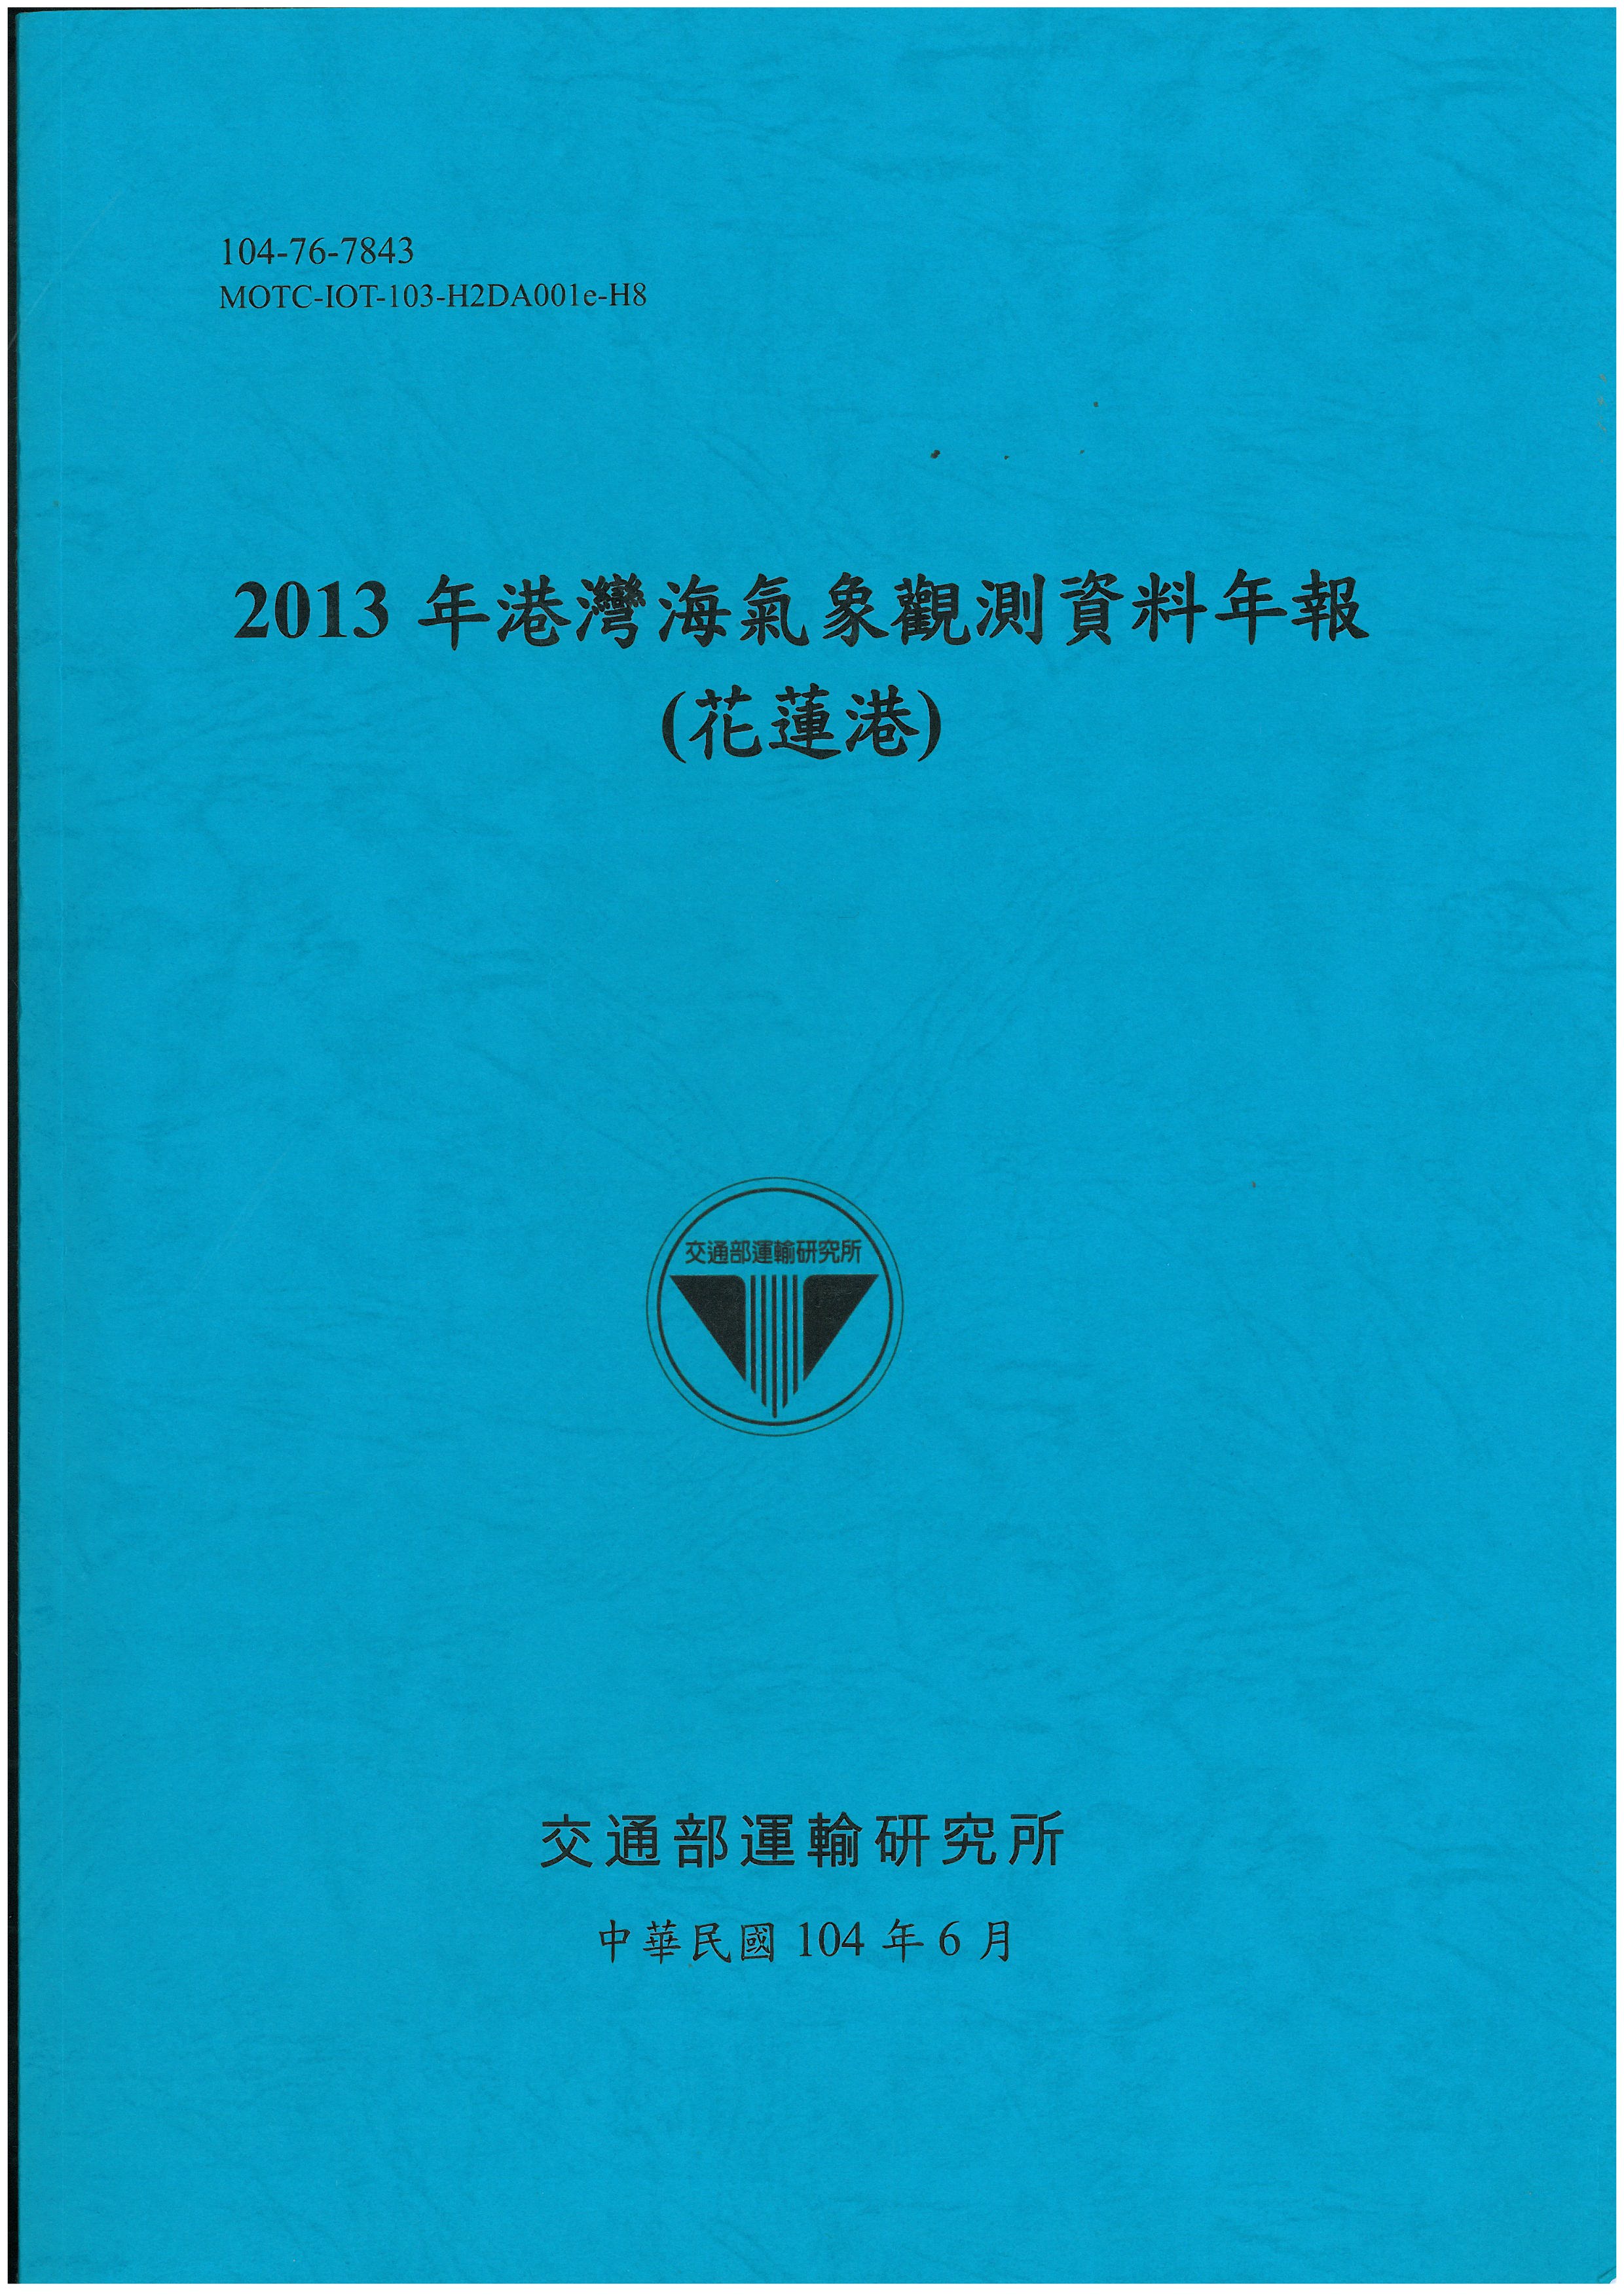 2013年港灣海氣象觀測資料年報(花蓮港)